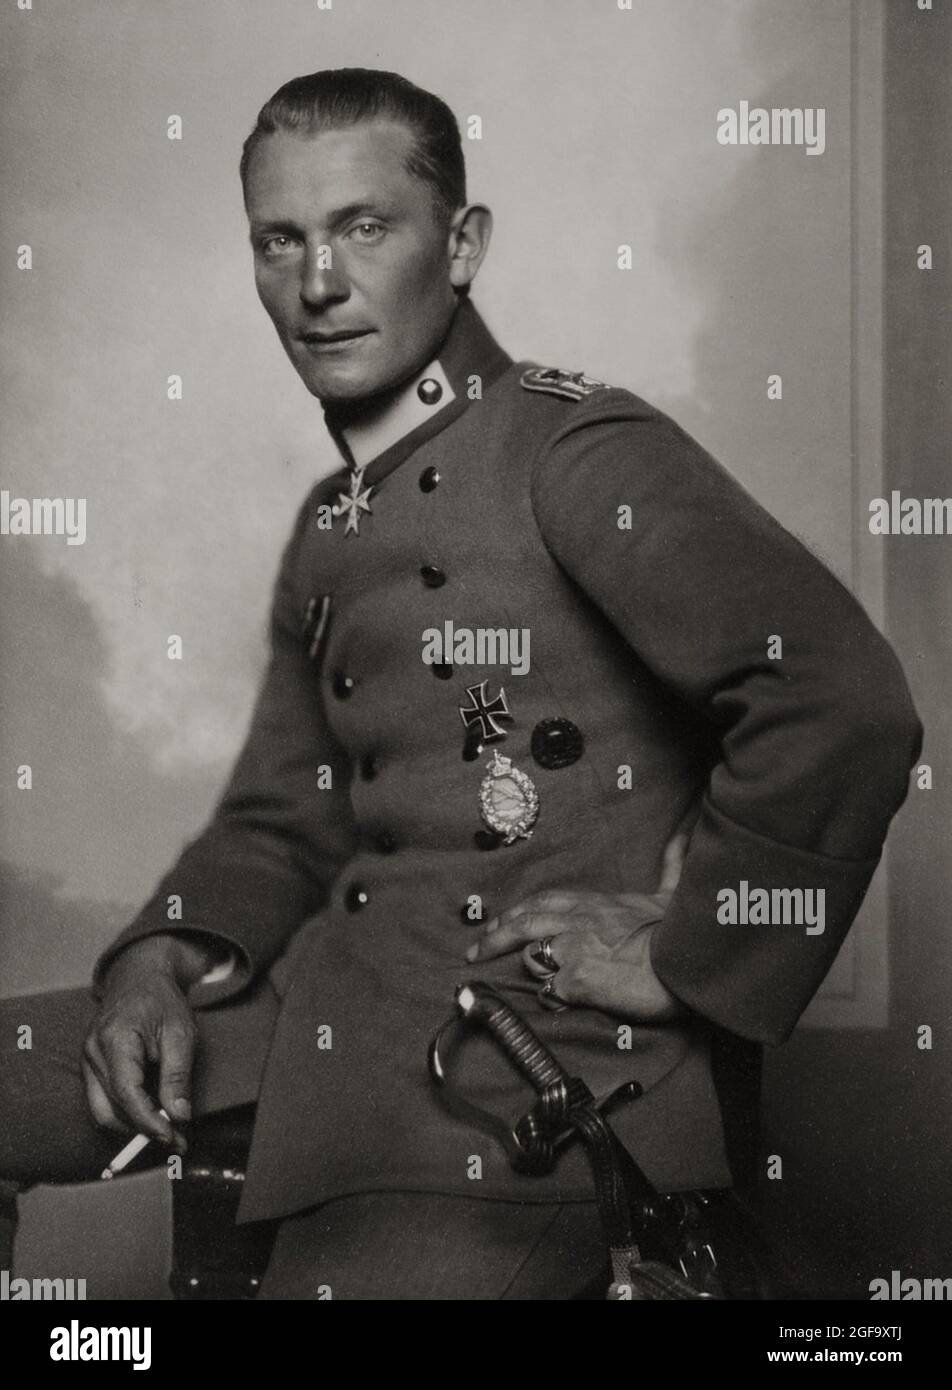 Un ritratto del 1918 della testa nazista del Luftwaffe Germann Göring come pilota combattente della prima Guerra Mondiale. Fu catturato nel 1945, processato e condannato a morte a Norimberga nel 1946. Ha commesso ore di suicidio prima di essere impiccato. Foto Stock